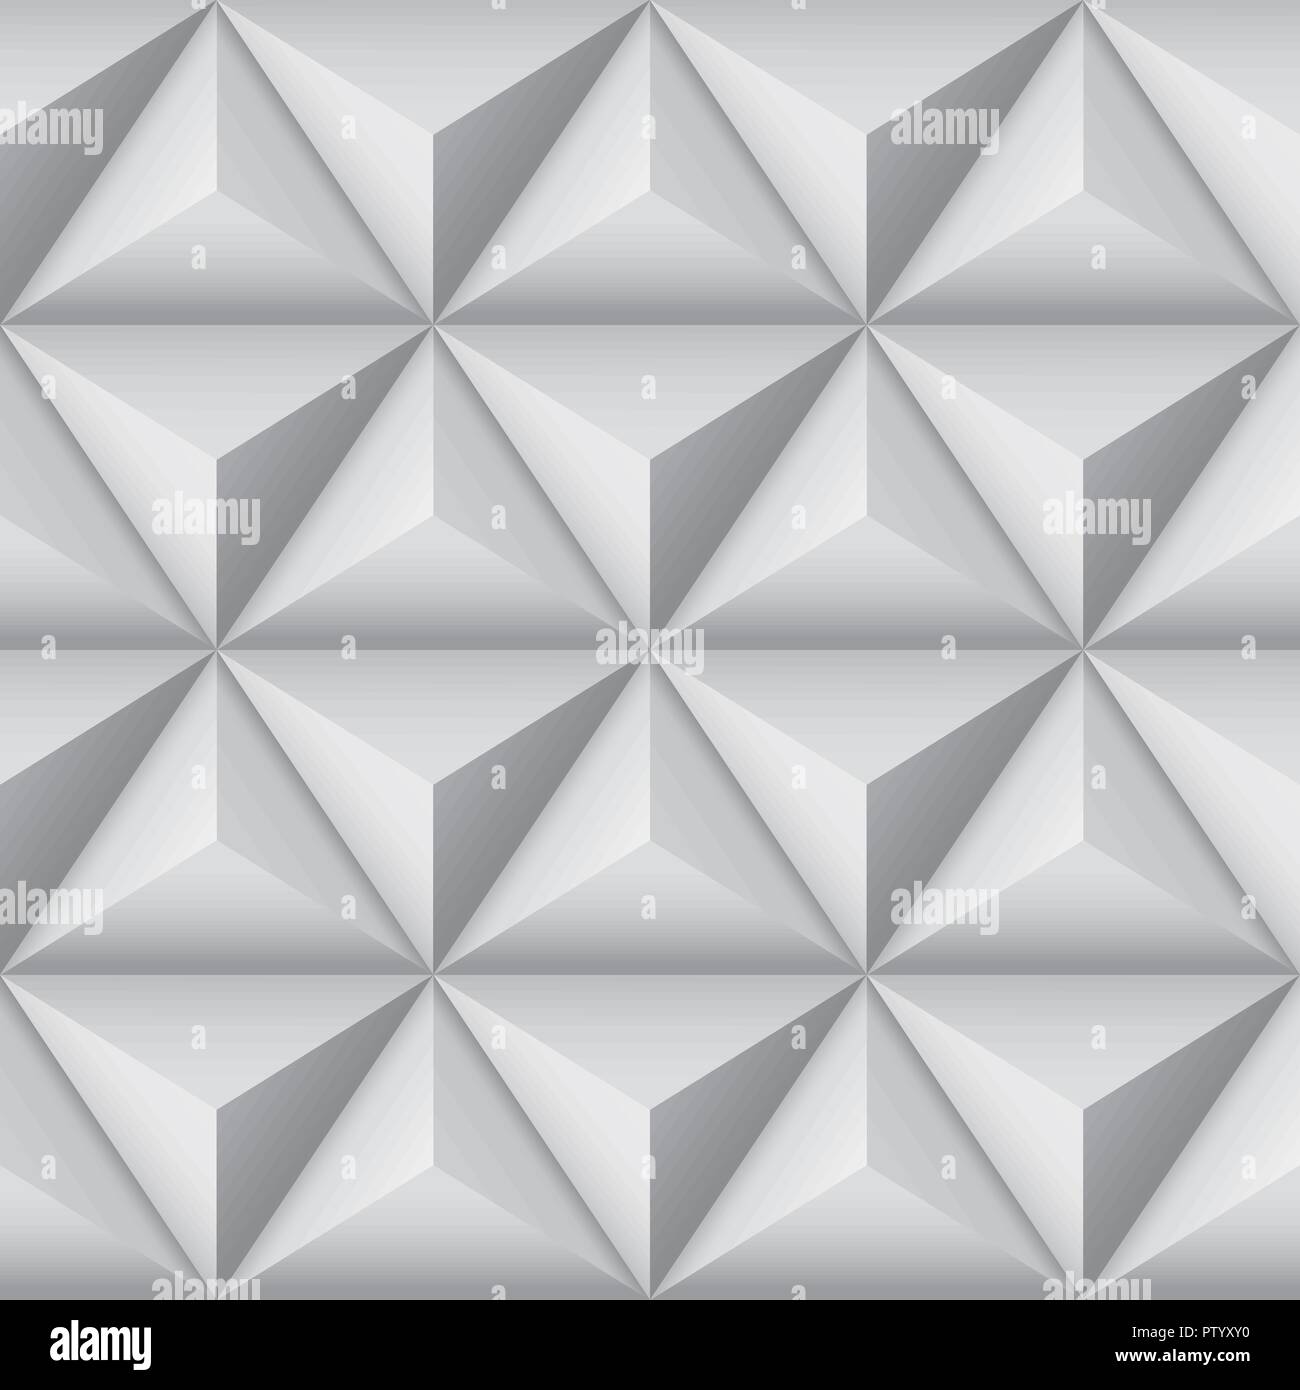 Motif géométrique 3D avec les pyramides. Abstract background transparent gris Illustration de Vecteur